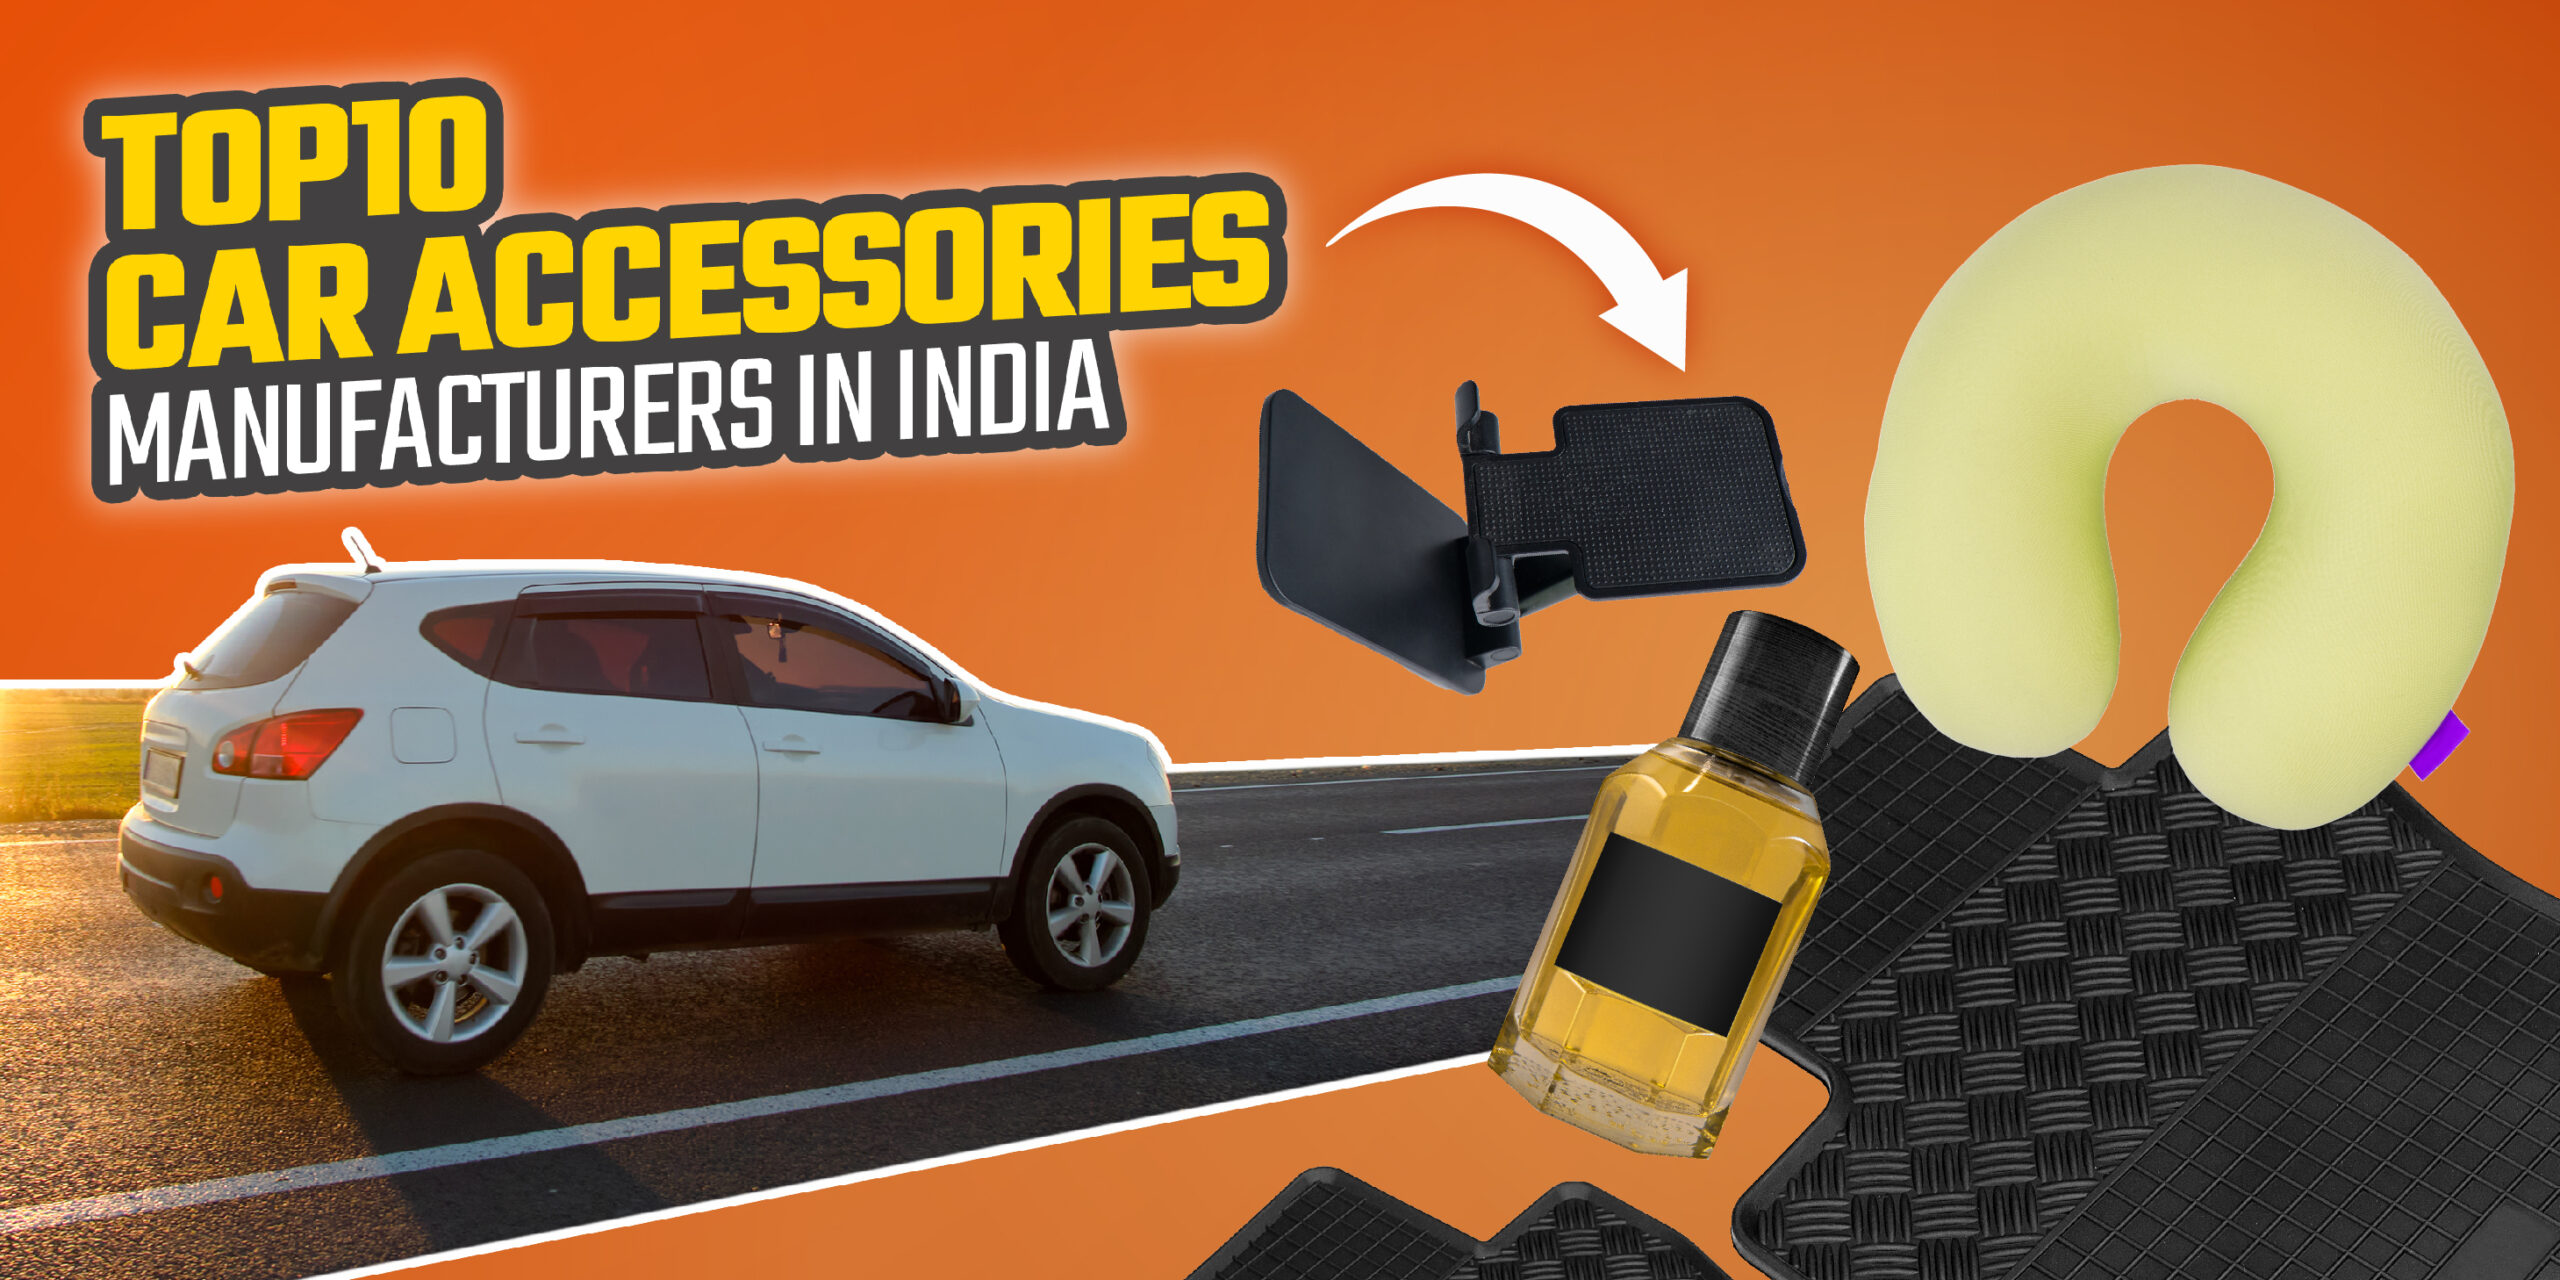 Car Accessories Manufacturers in India